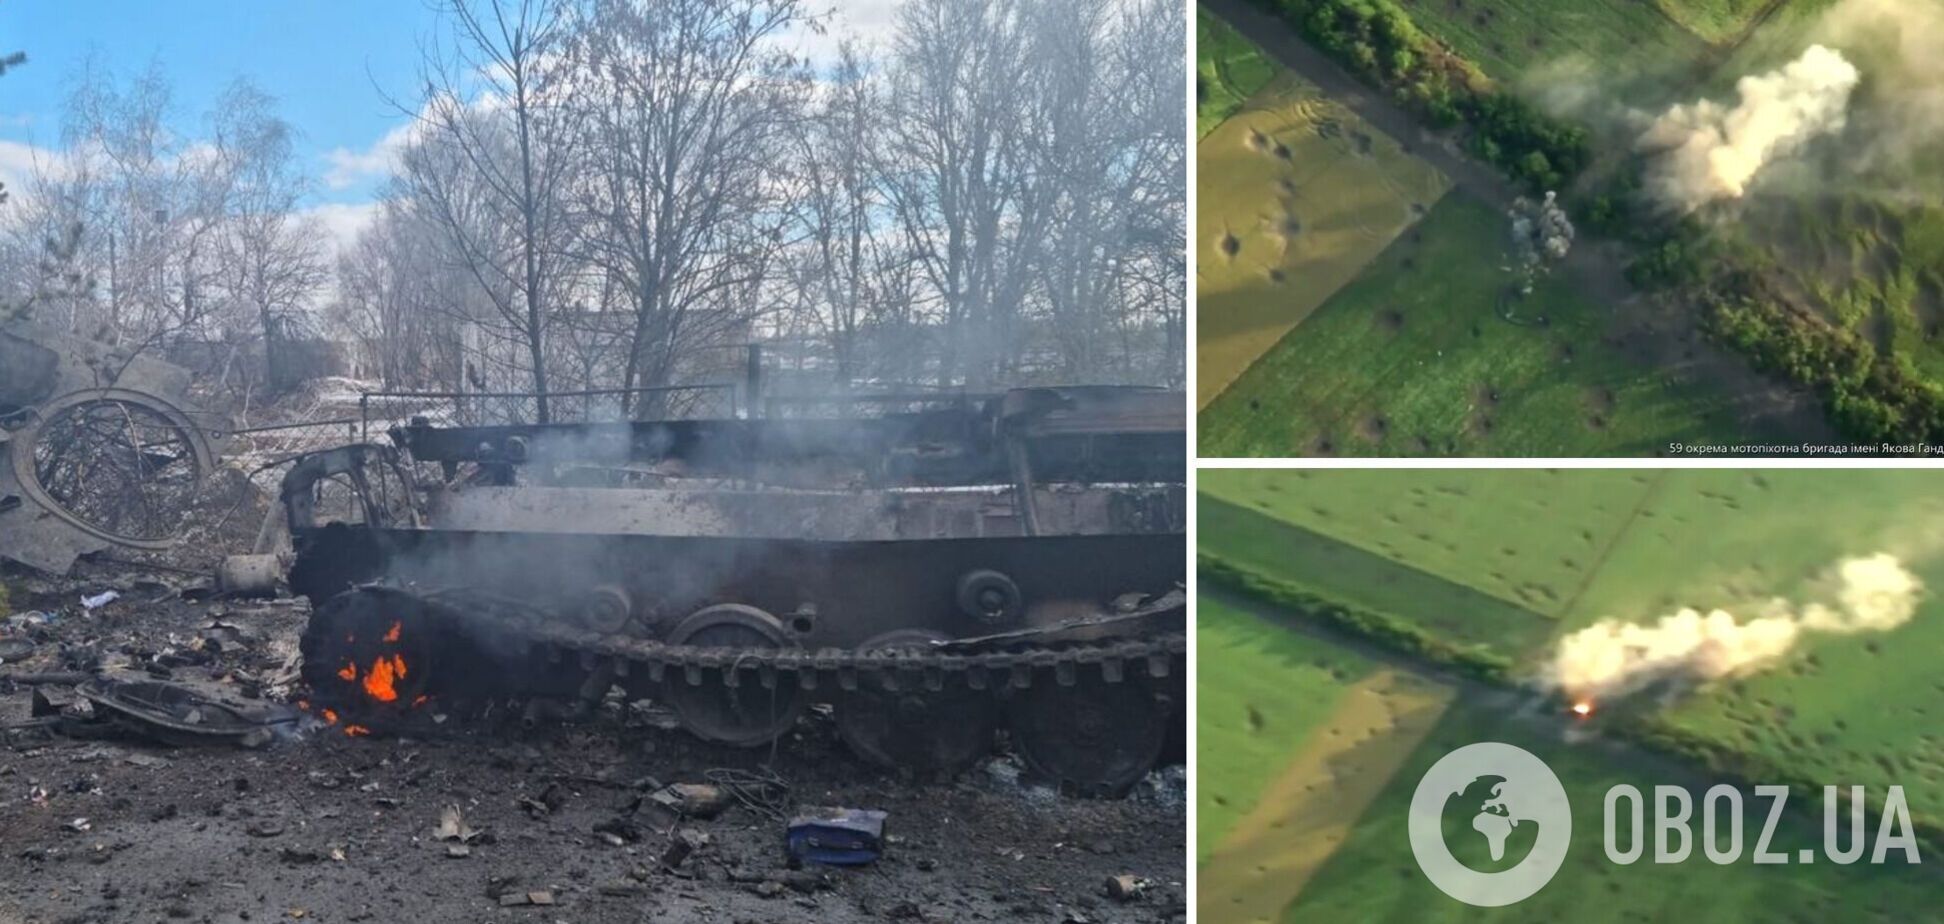 Украинские бойцы показали уничтожение очередной вражеской техники